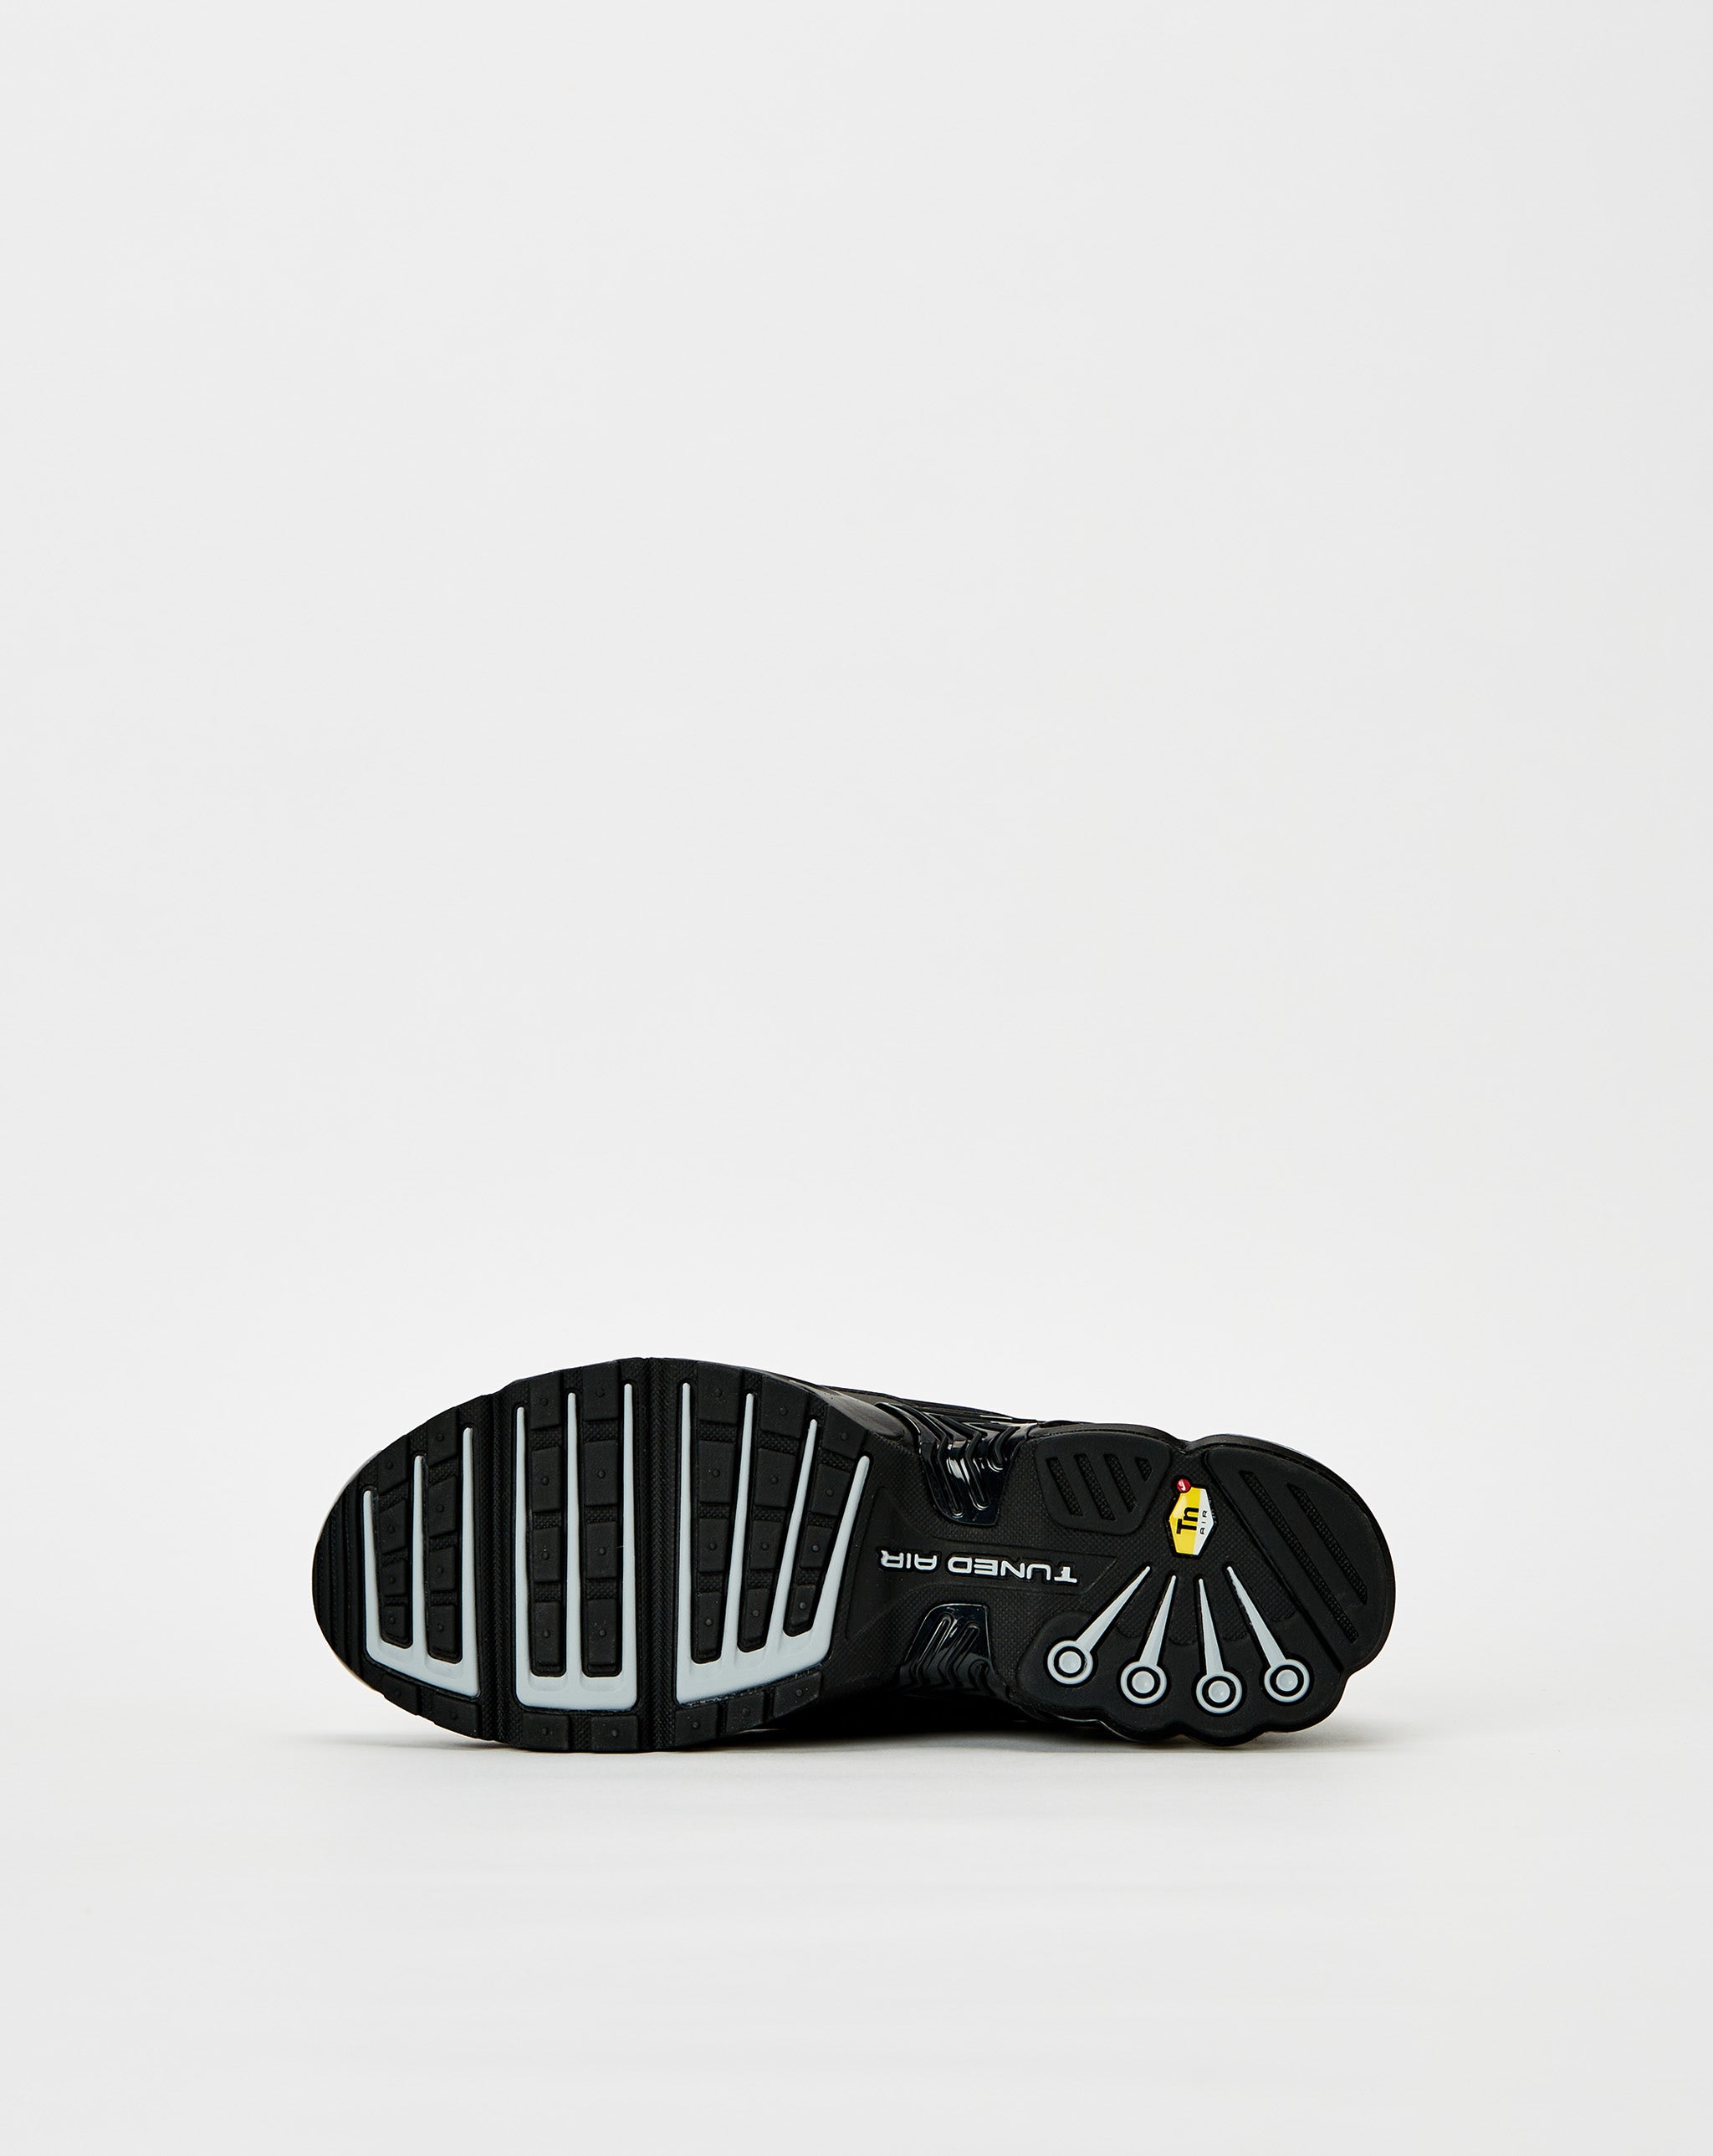 Nike nike hyperdunks grey and blue shoes gold black  - Cheap Erlebniswelt-fliegenfischen Jordan outlet